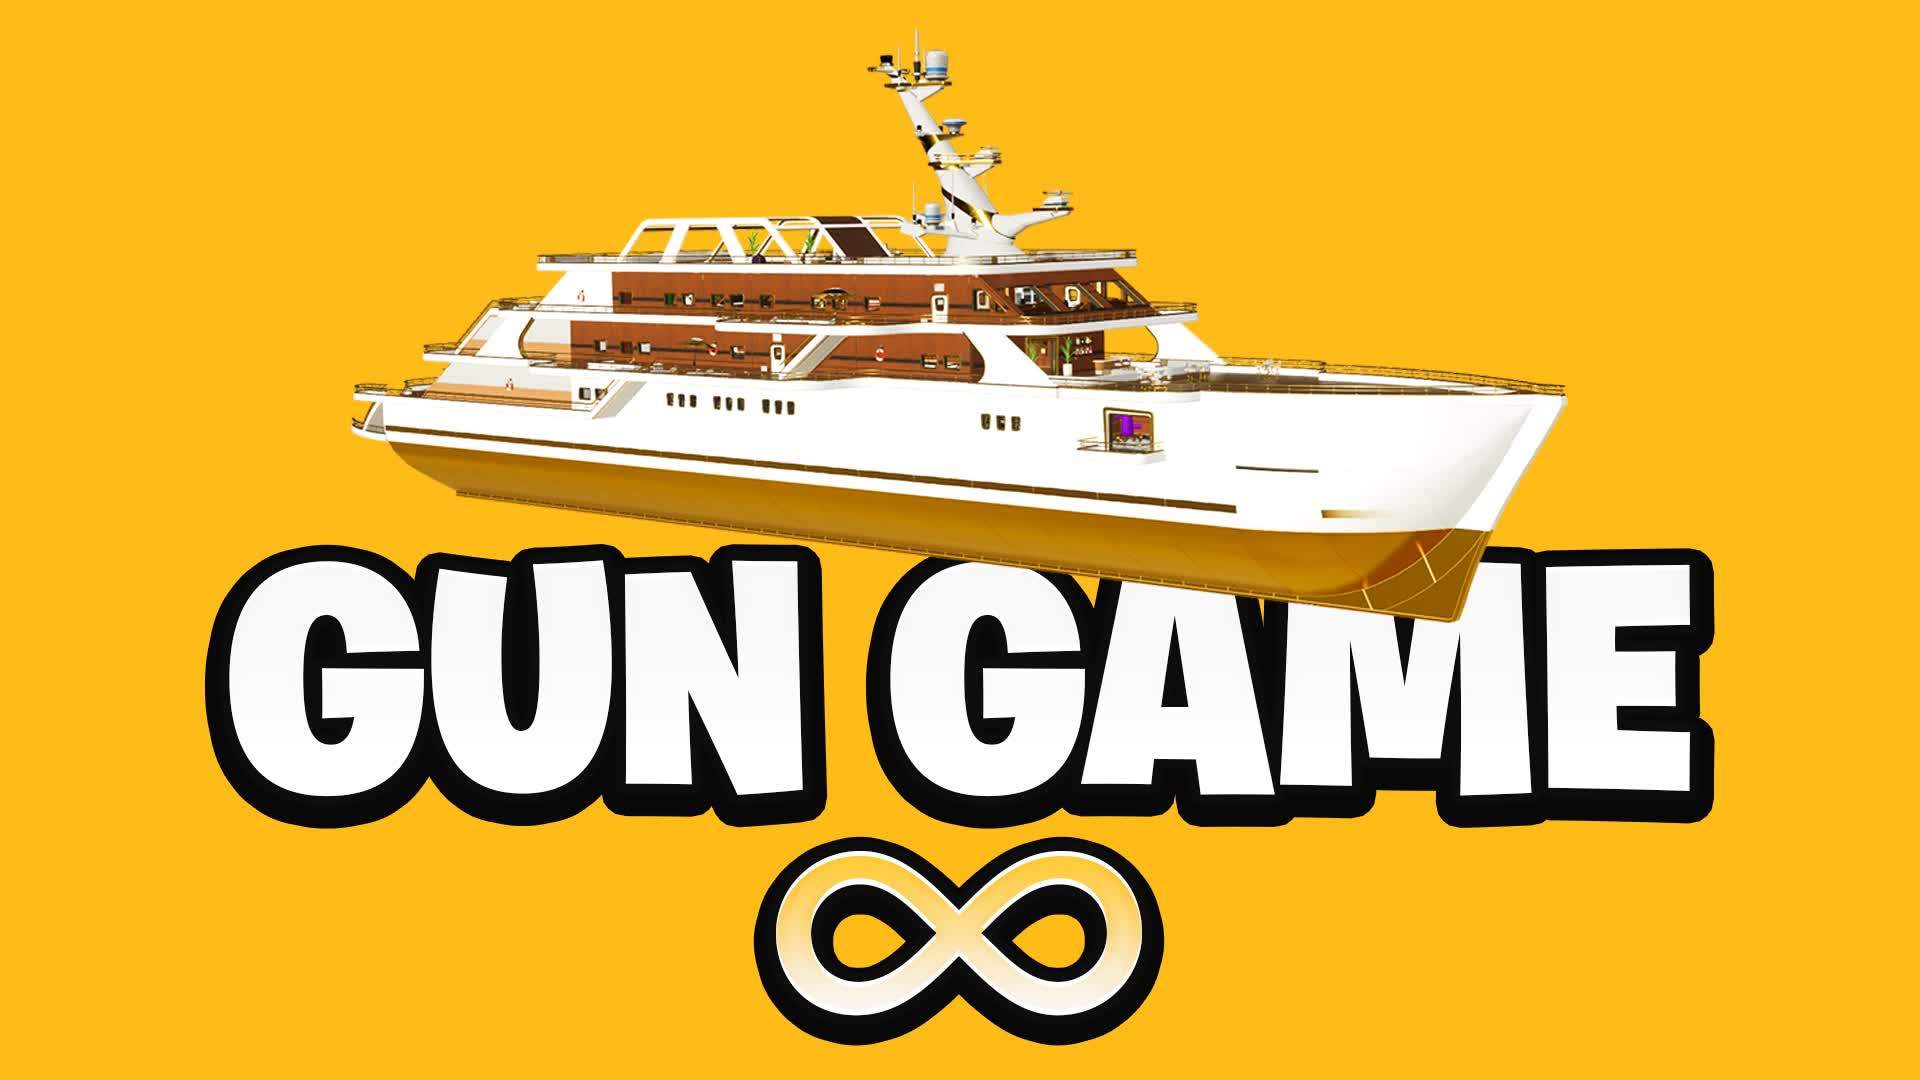 Infinite Gun Game Yacht 🔫